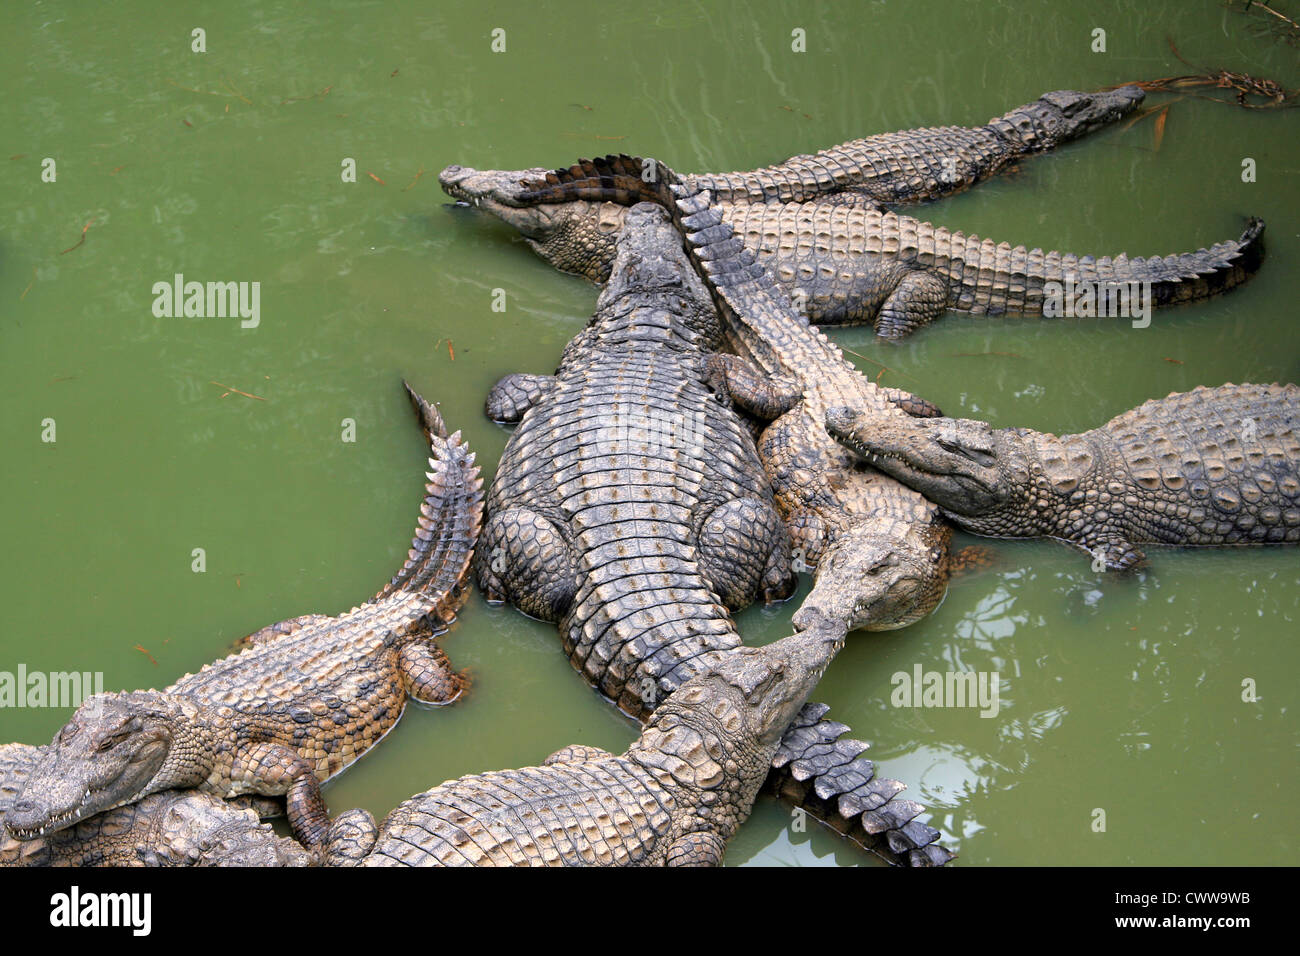 Gruppo di coccodrilli in acqua verdastra, girato in ambiente naturale, Madagascar Foto Stock